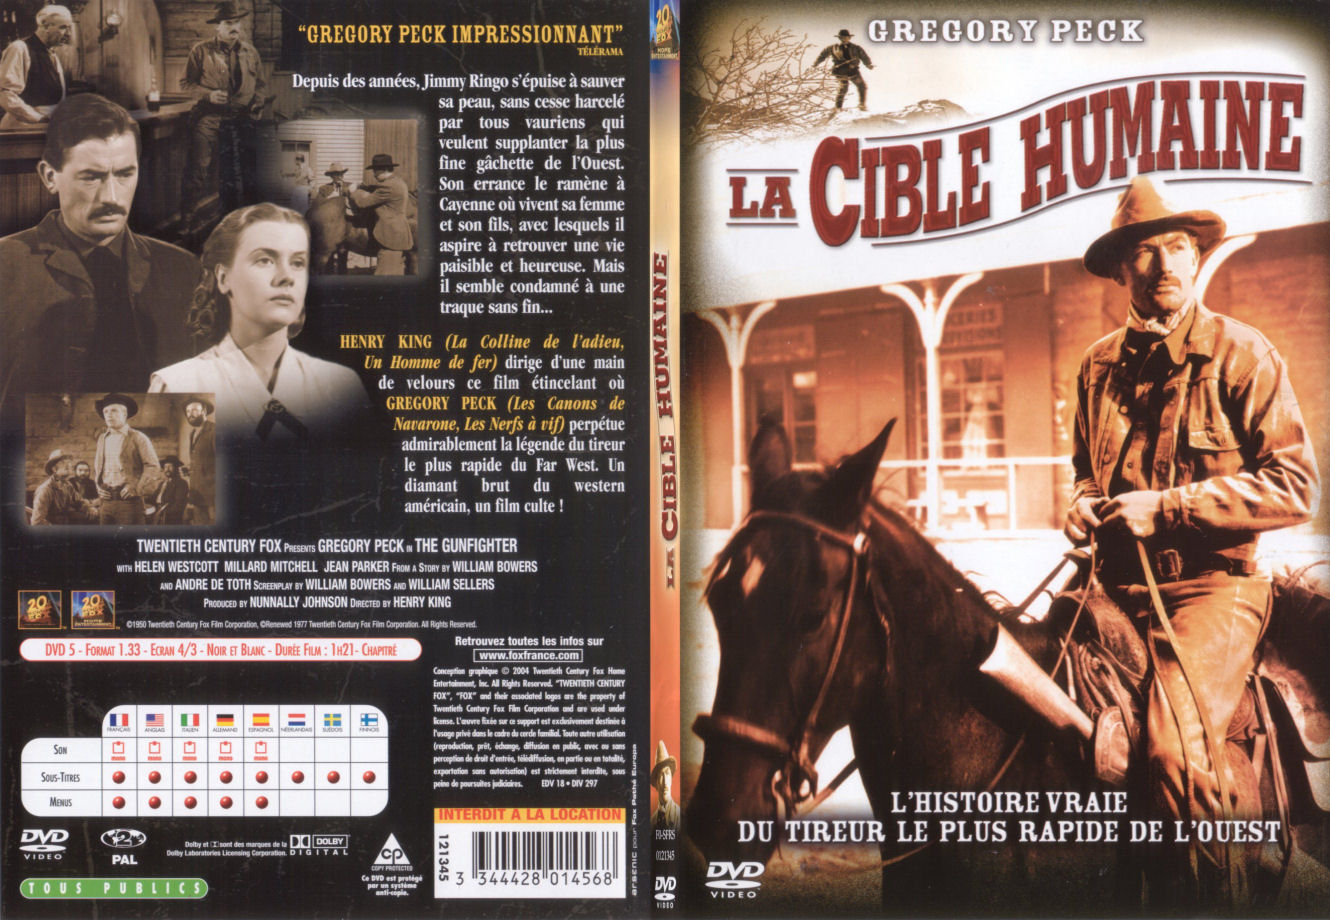 Jaquette DVD La cible humaine - SLIM